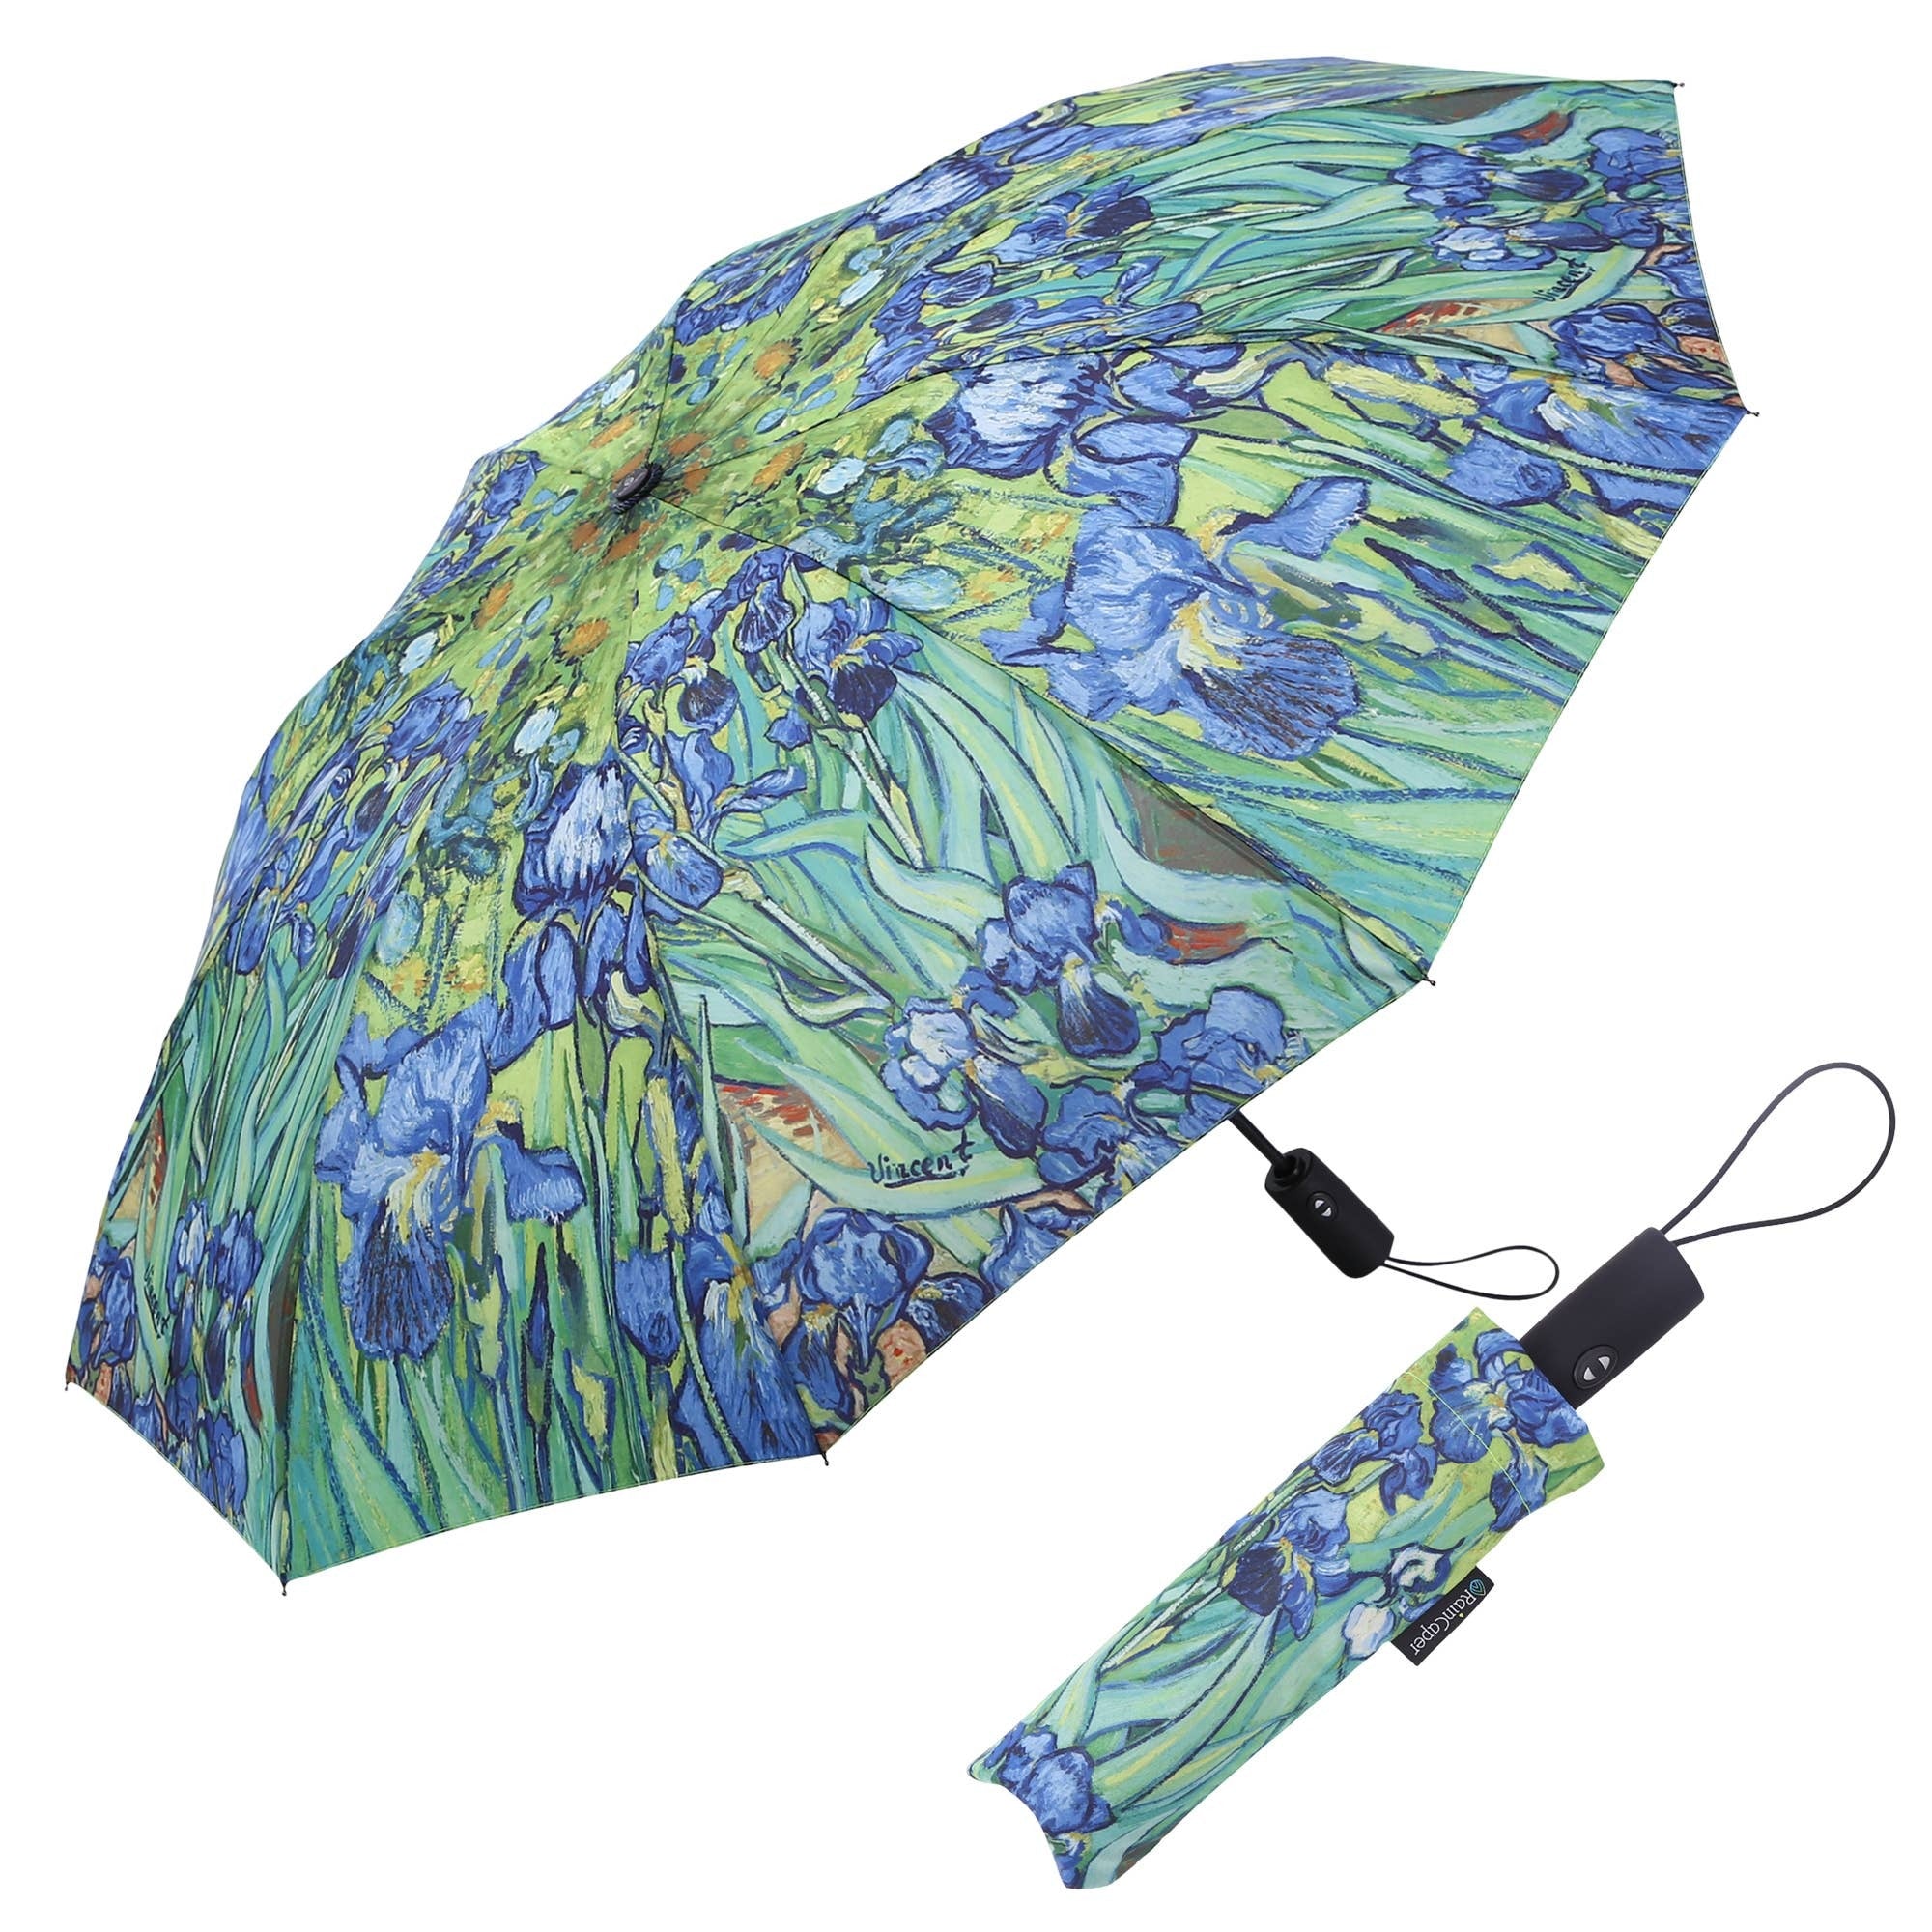 RainCaper van Gogh Irises Folding Travel Umbrella